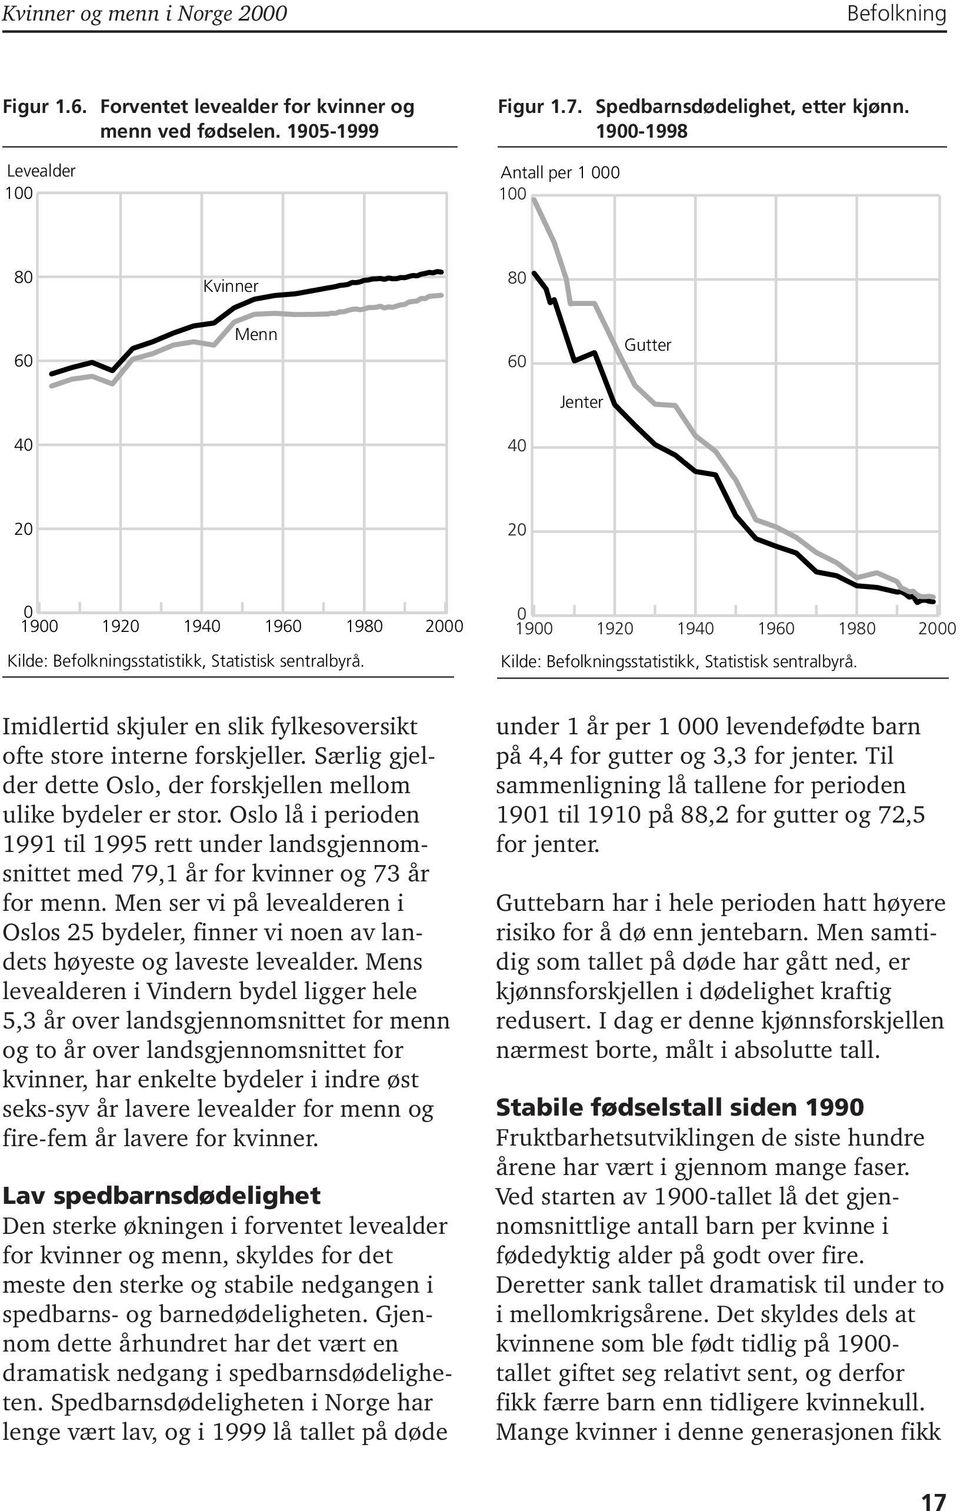 forskjeller. Særlig gjelder dette Oslo, der forskjellen mellom ulike bydeler er stor. Oslo lå i perioden 1991 til 1995 rett under landsgjennomsnittet med 79,1 år for kvinner og 73 år for menn.